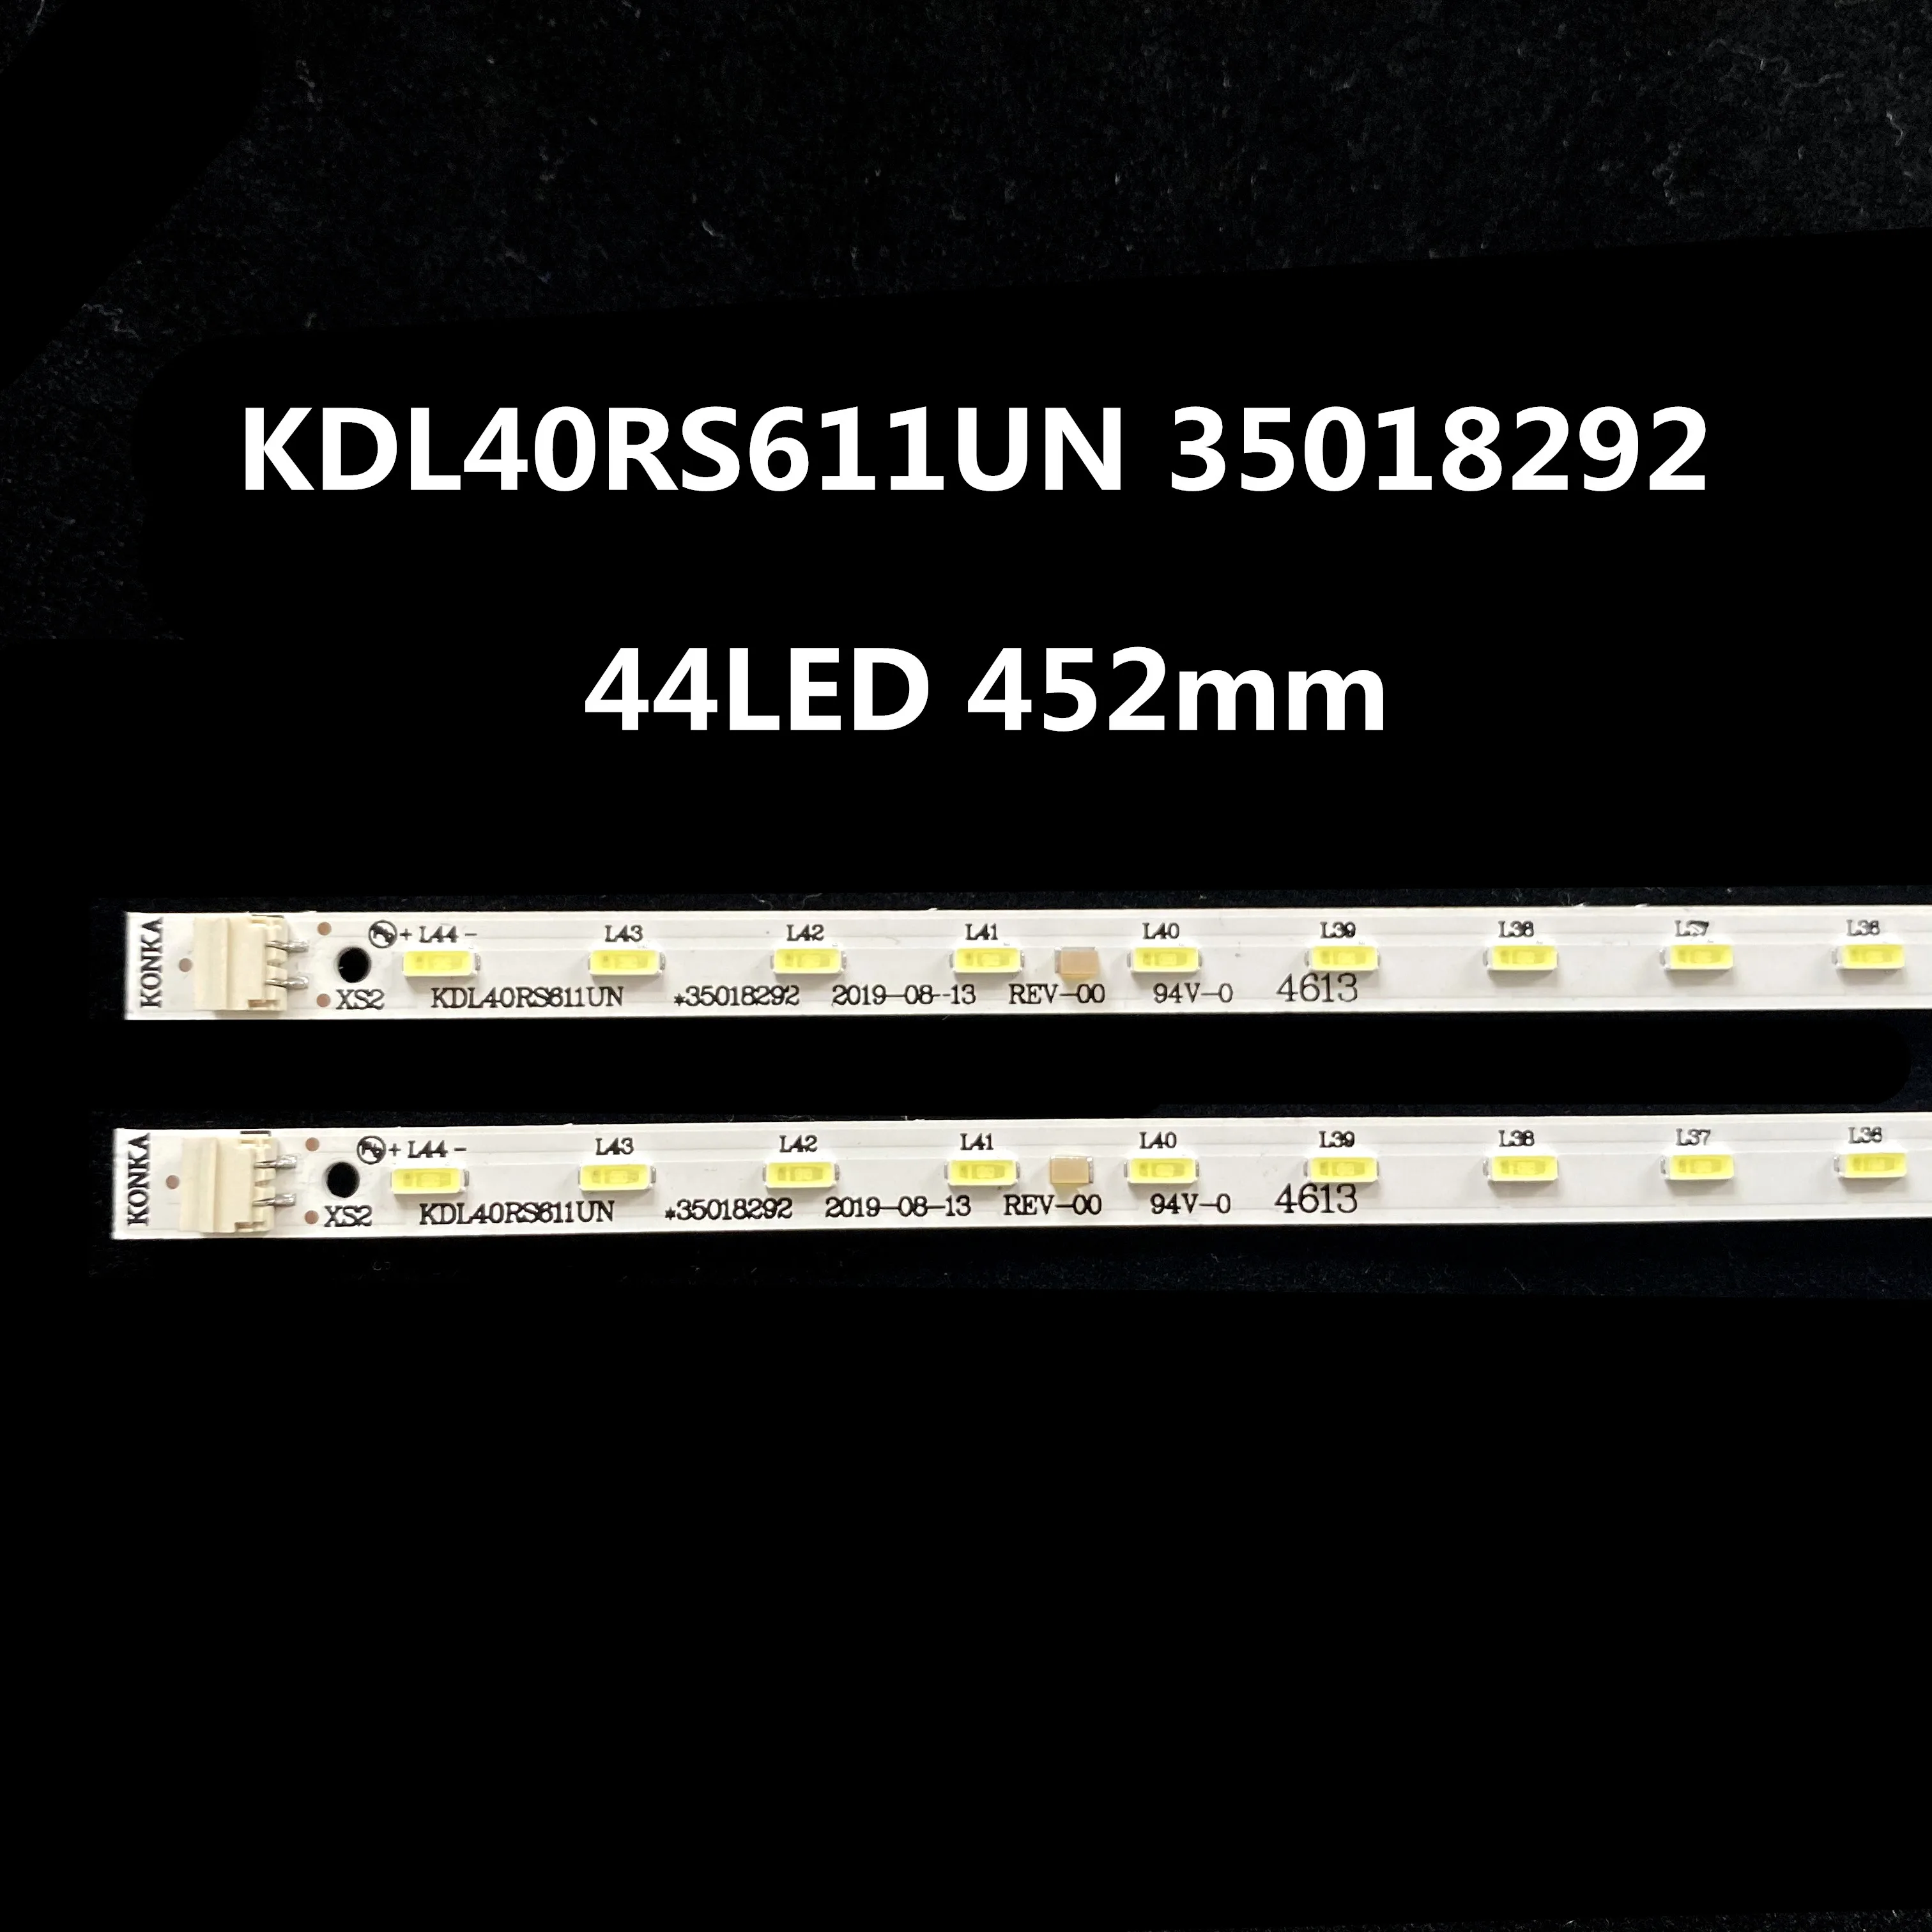 10 novos PCS 44LED 452mm 35018292 LED strip para KDL40RS611UN LE4057 KDL40RS611UN KDL40RS811UN 35018292 35018294 35018325 GZ13-012